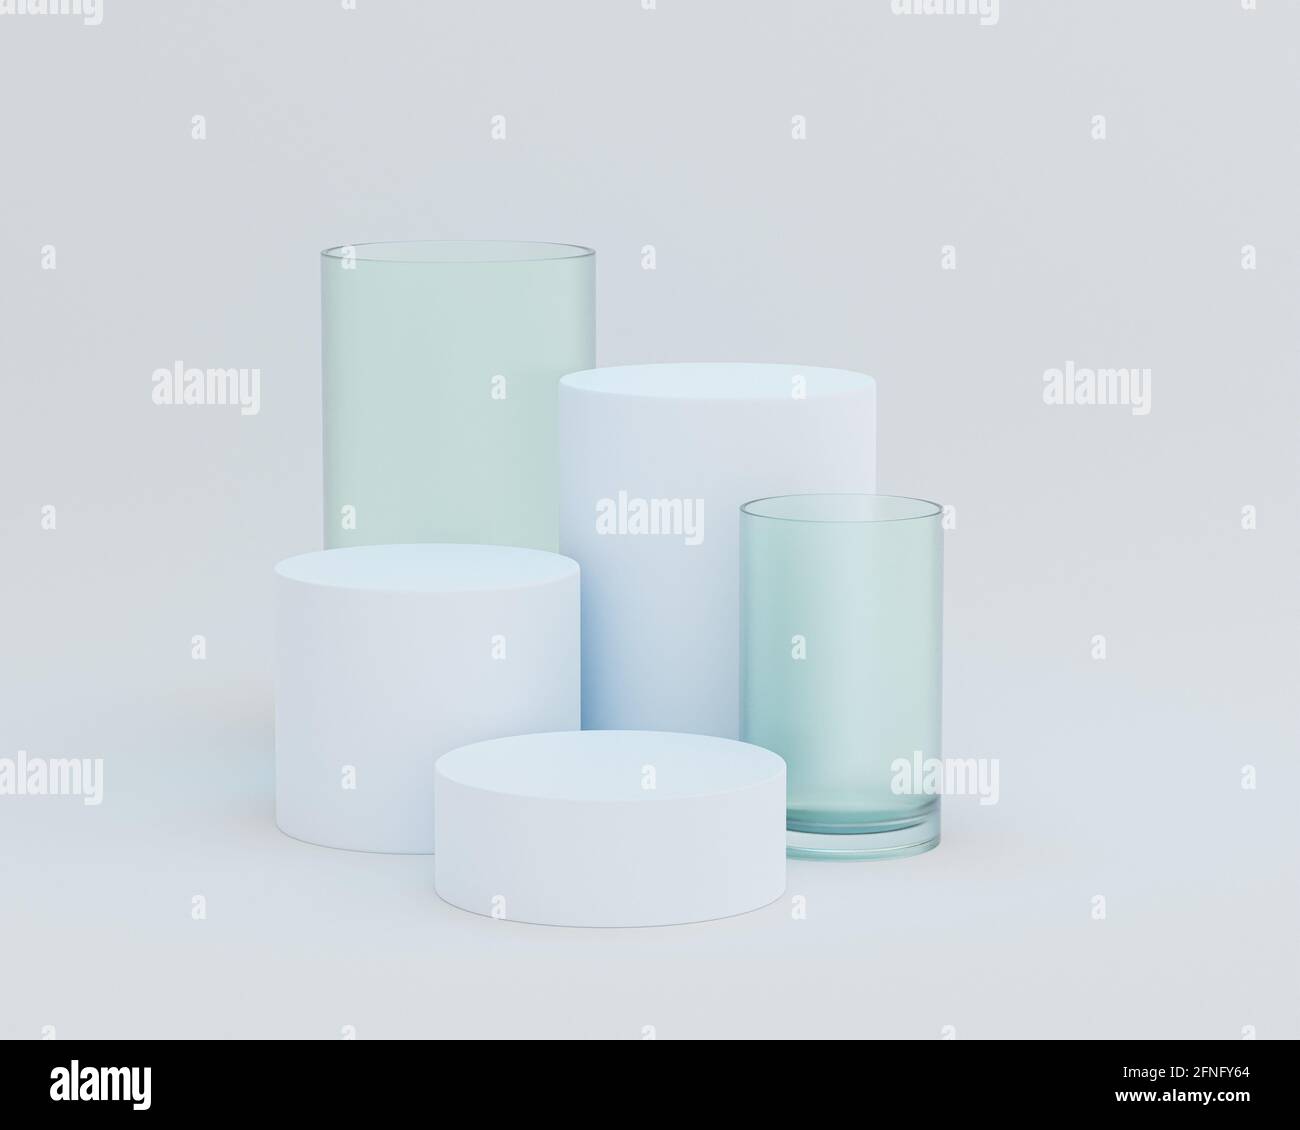 Podiums ou socles en forme de cylindre pour produits ou publicité sur fond blanc, rendu minimal de l'illustration 3d Banque D'Images